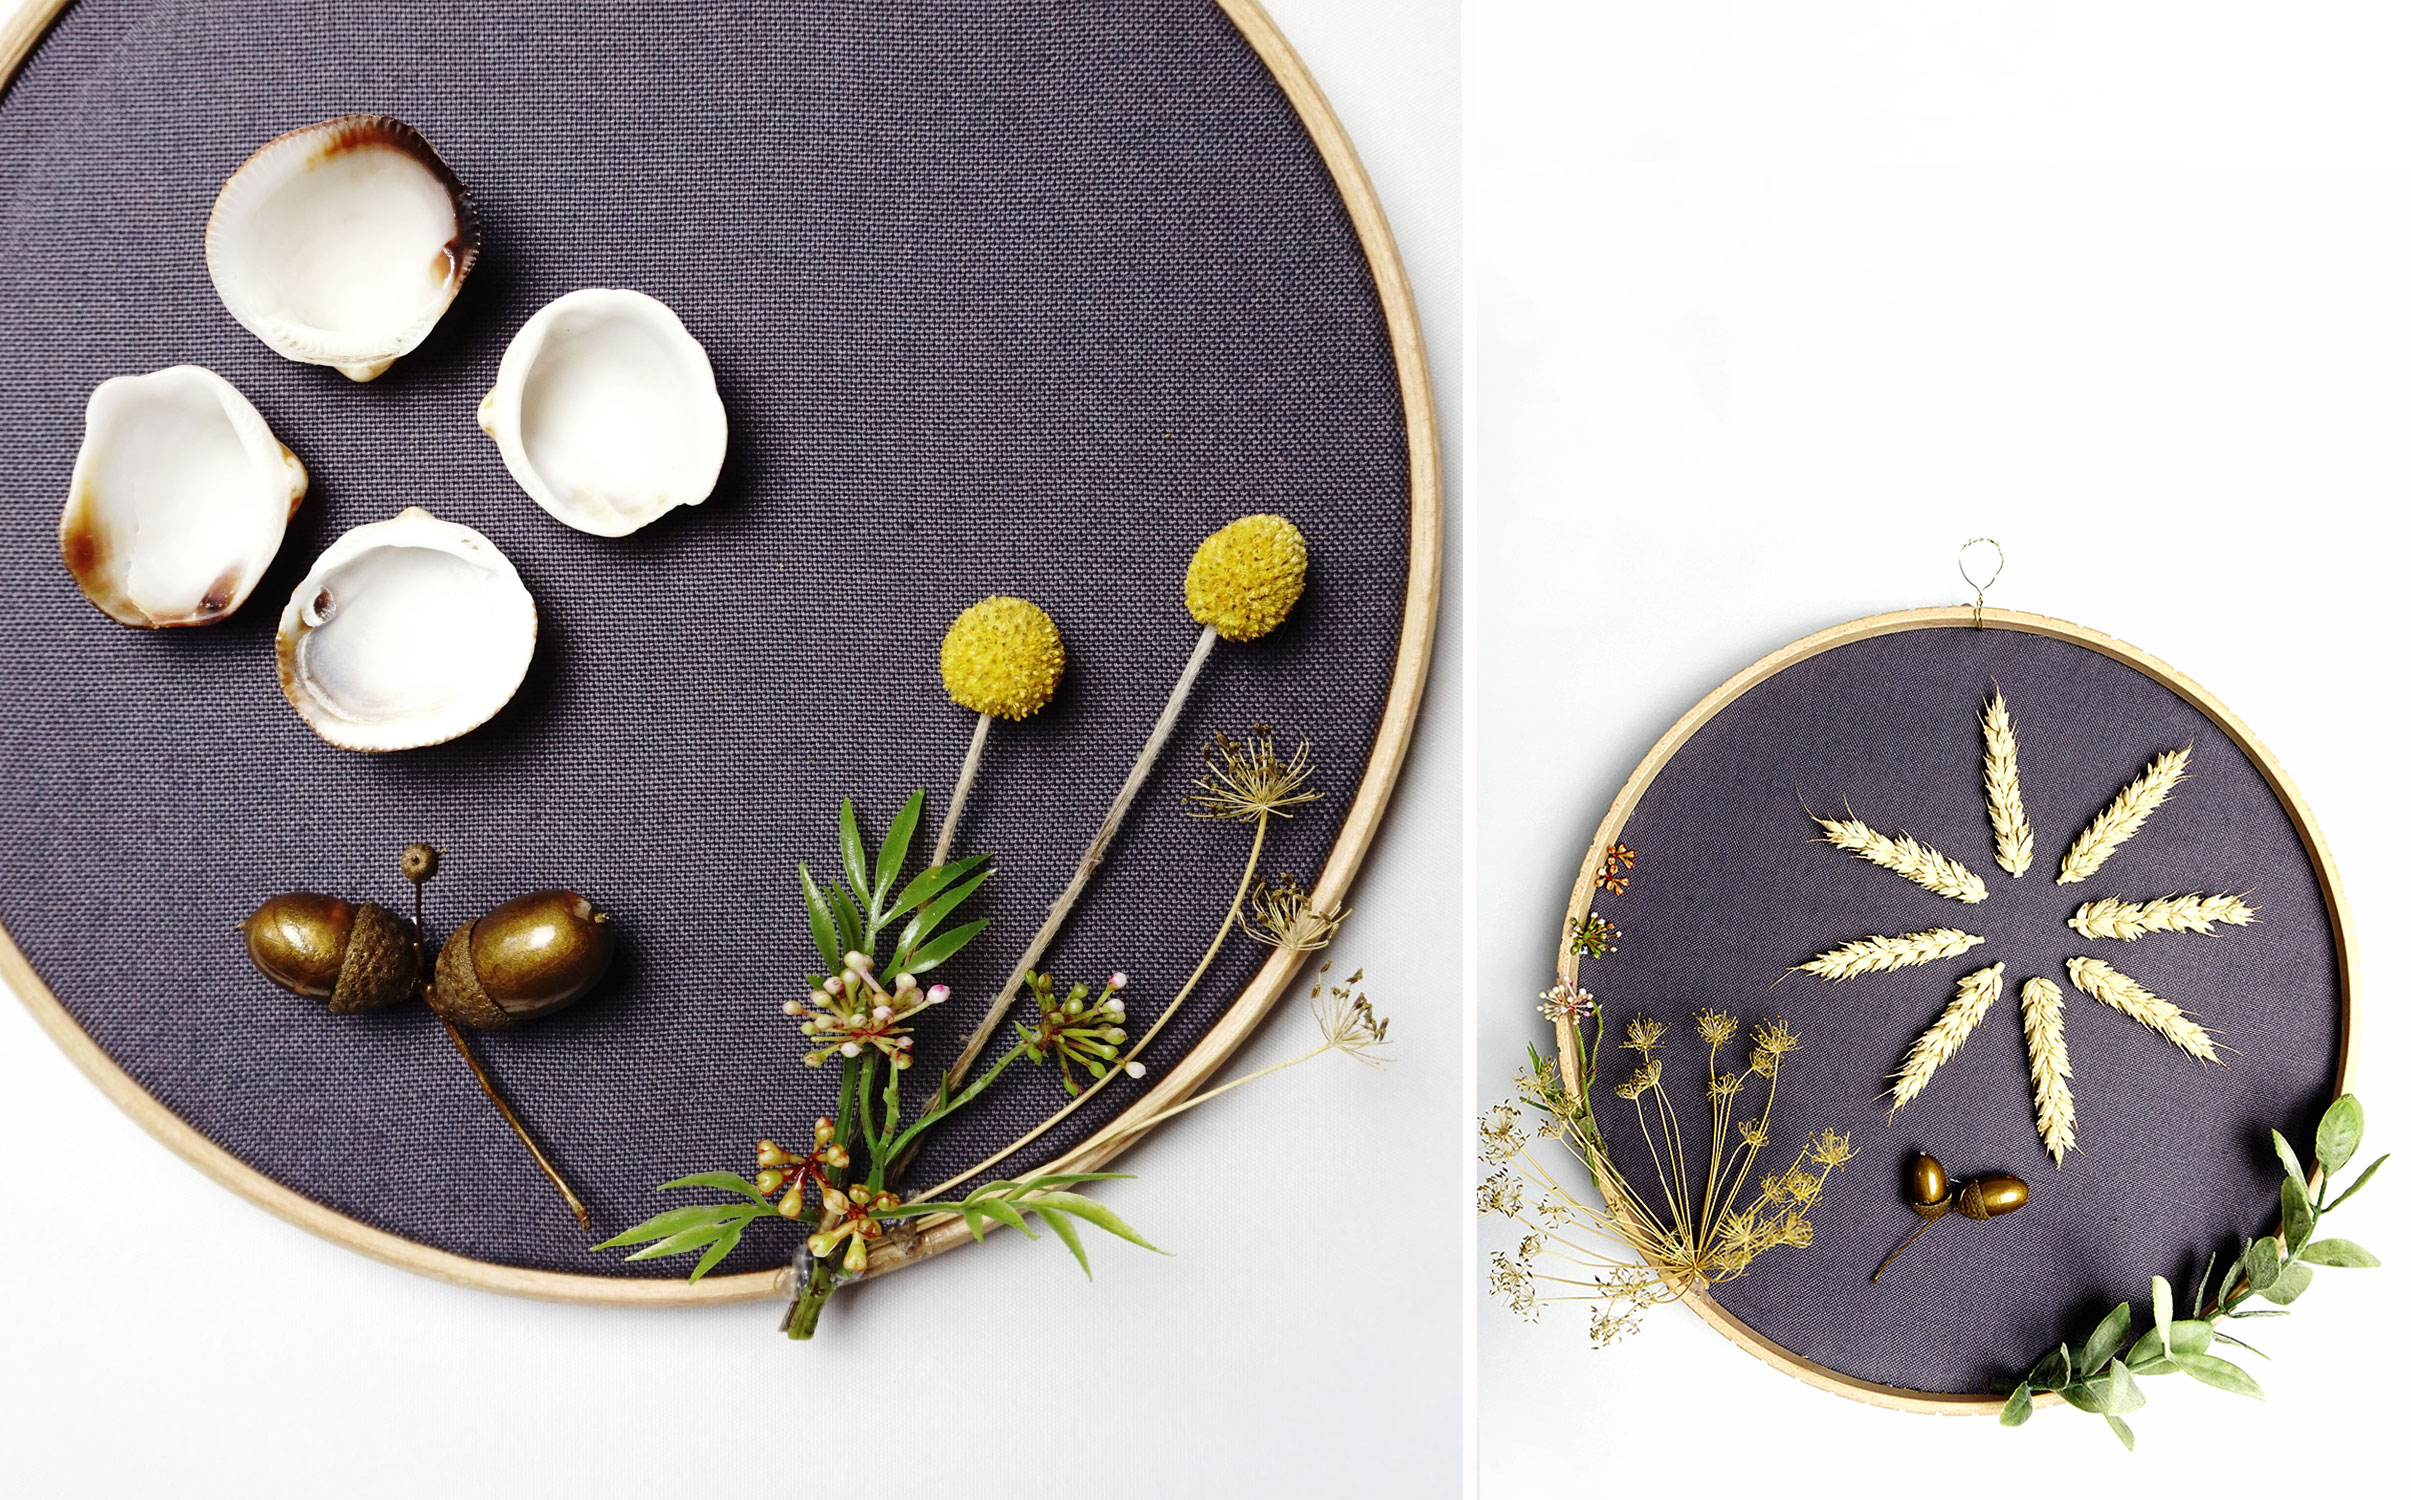 Herbstdeko basteln im Scandi Style – Stickrahmen mit Naturmaterialien dekorieren